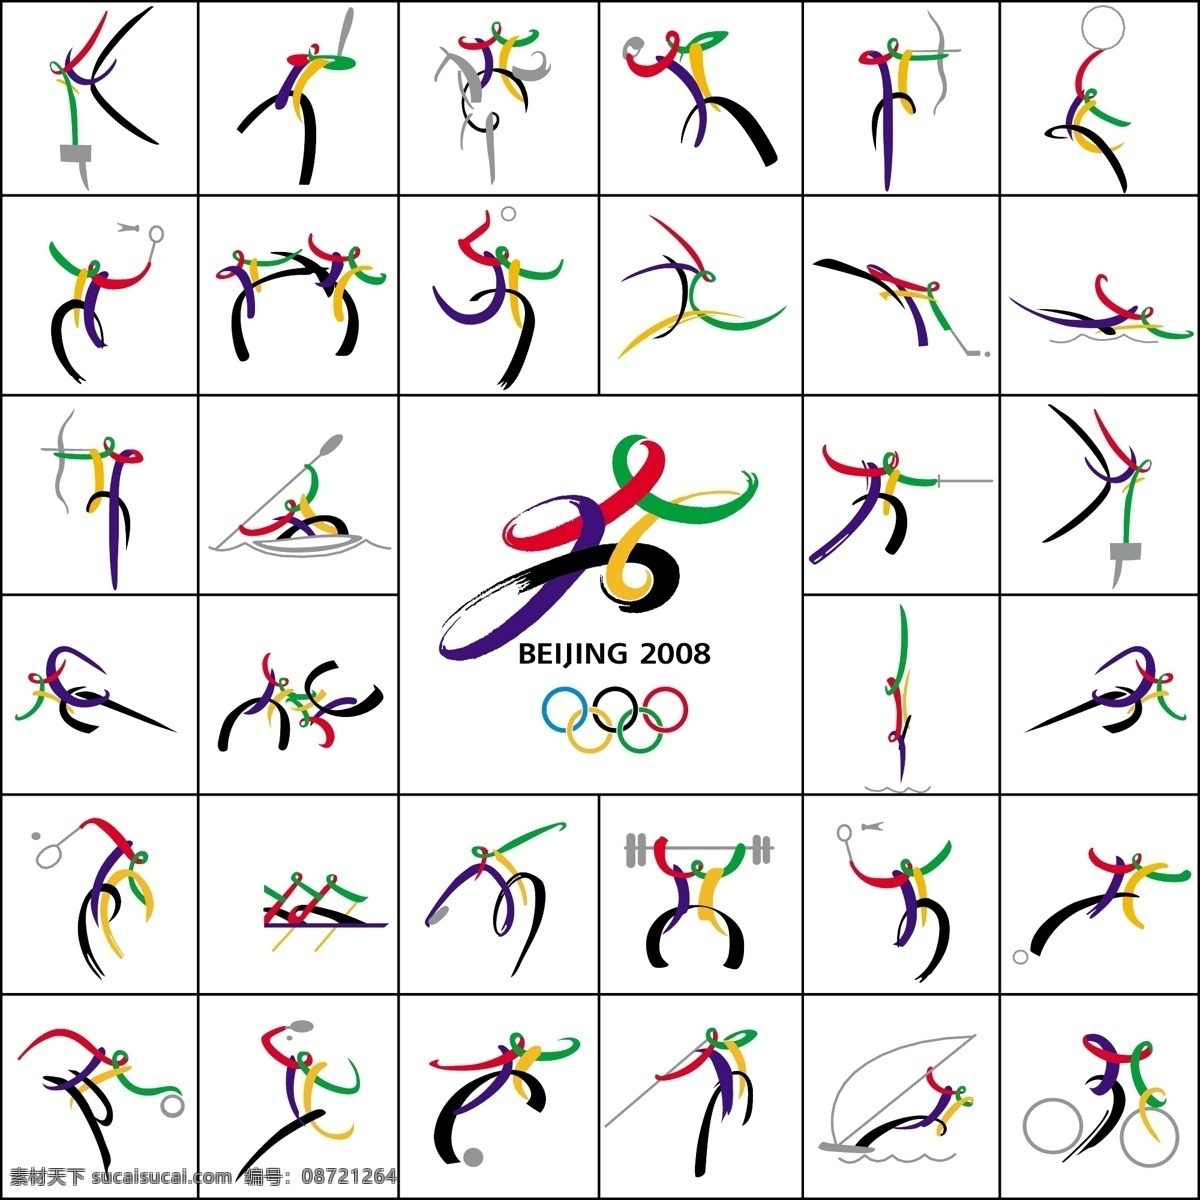 奥运会 图标 奥运标志 奥运会图标 奥运图标 矢量素材 矢量图标 五环 北京2008 抽象运动人物 其他矢量图